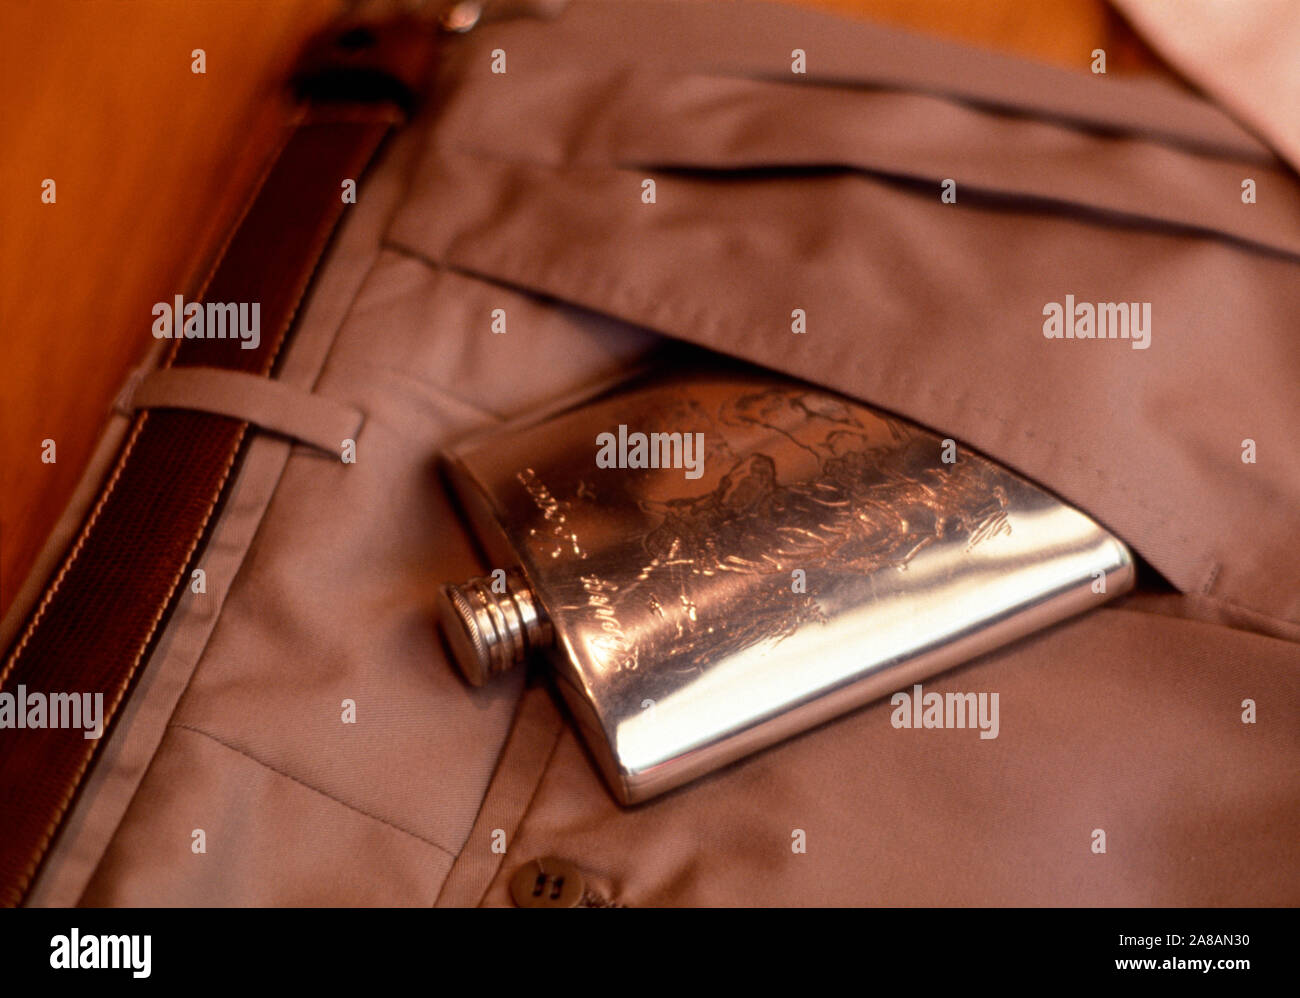 Close-up de petaca en el bolsillo de los pantalones marrones, Barcelona, España Foto de stock